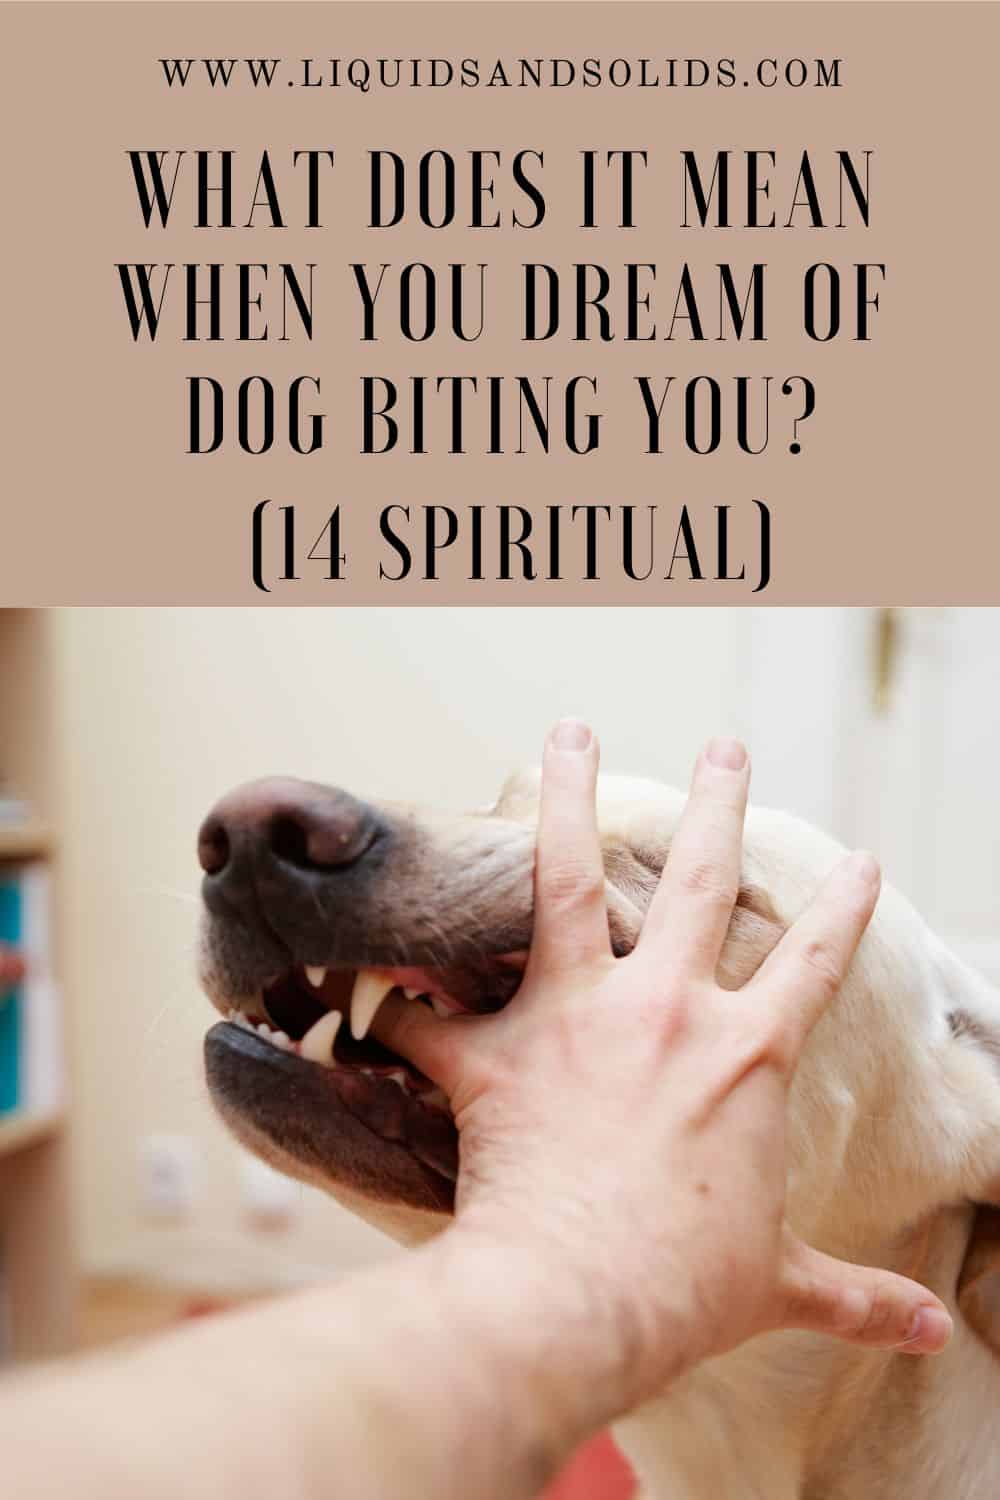  Rêve d'un chien qui vous mord (14 significations spirituelles)